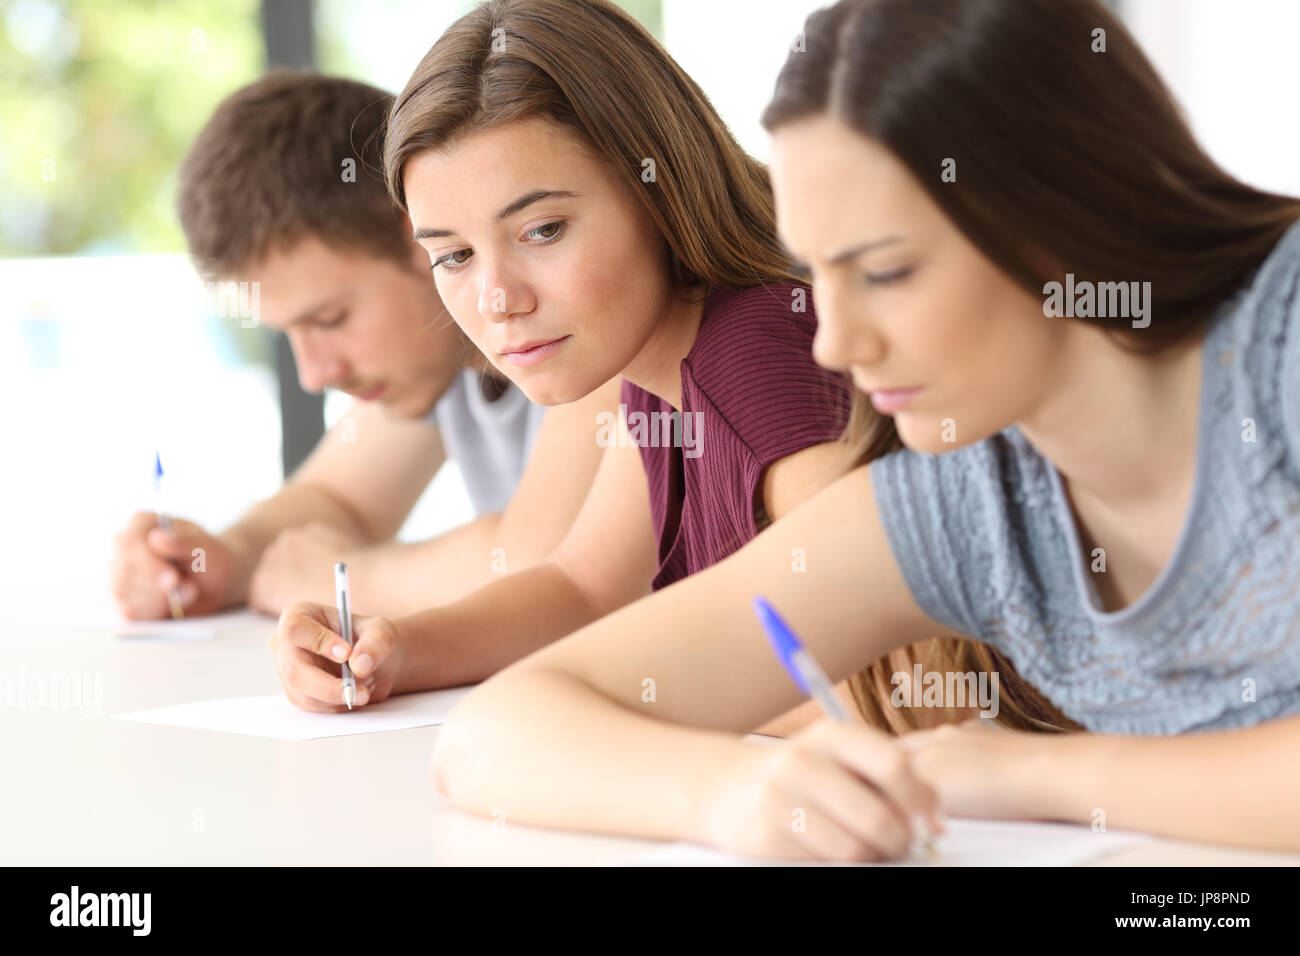 Estudiante intentando copiar un examen de la enojada classmate en un aula. Foto de stock